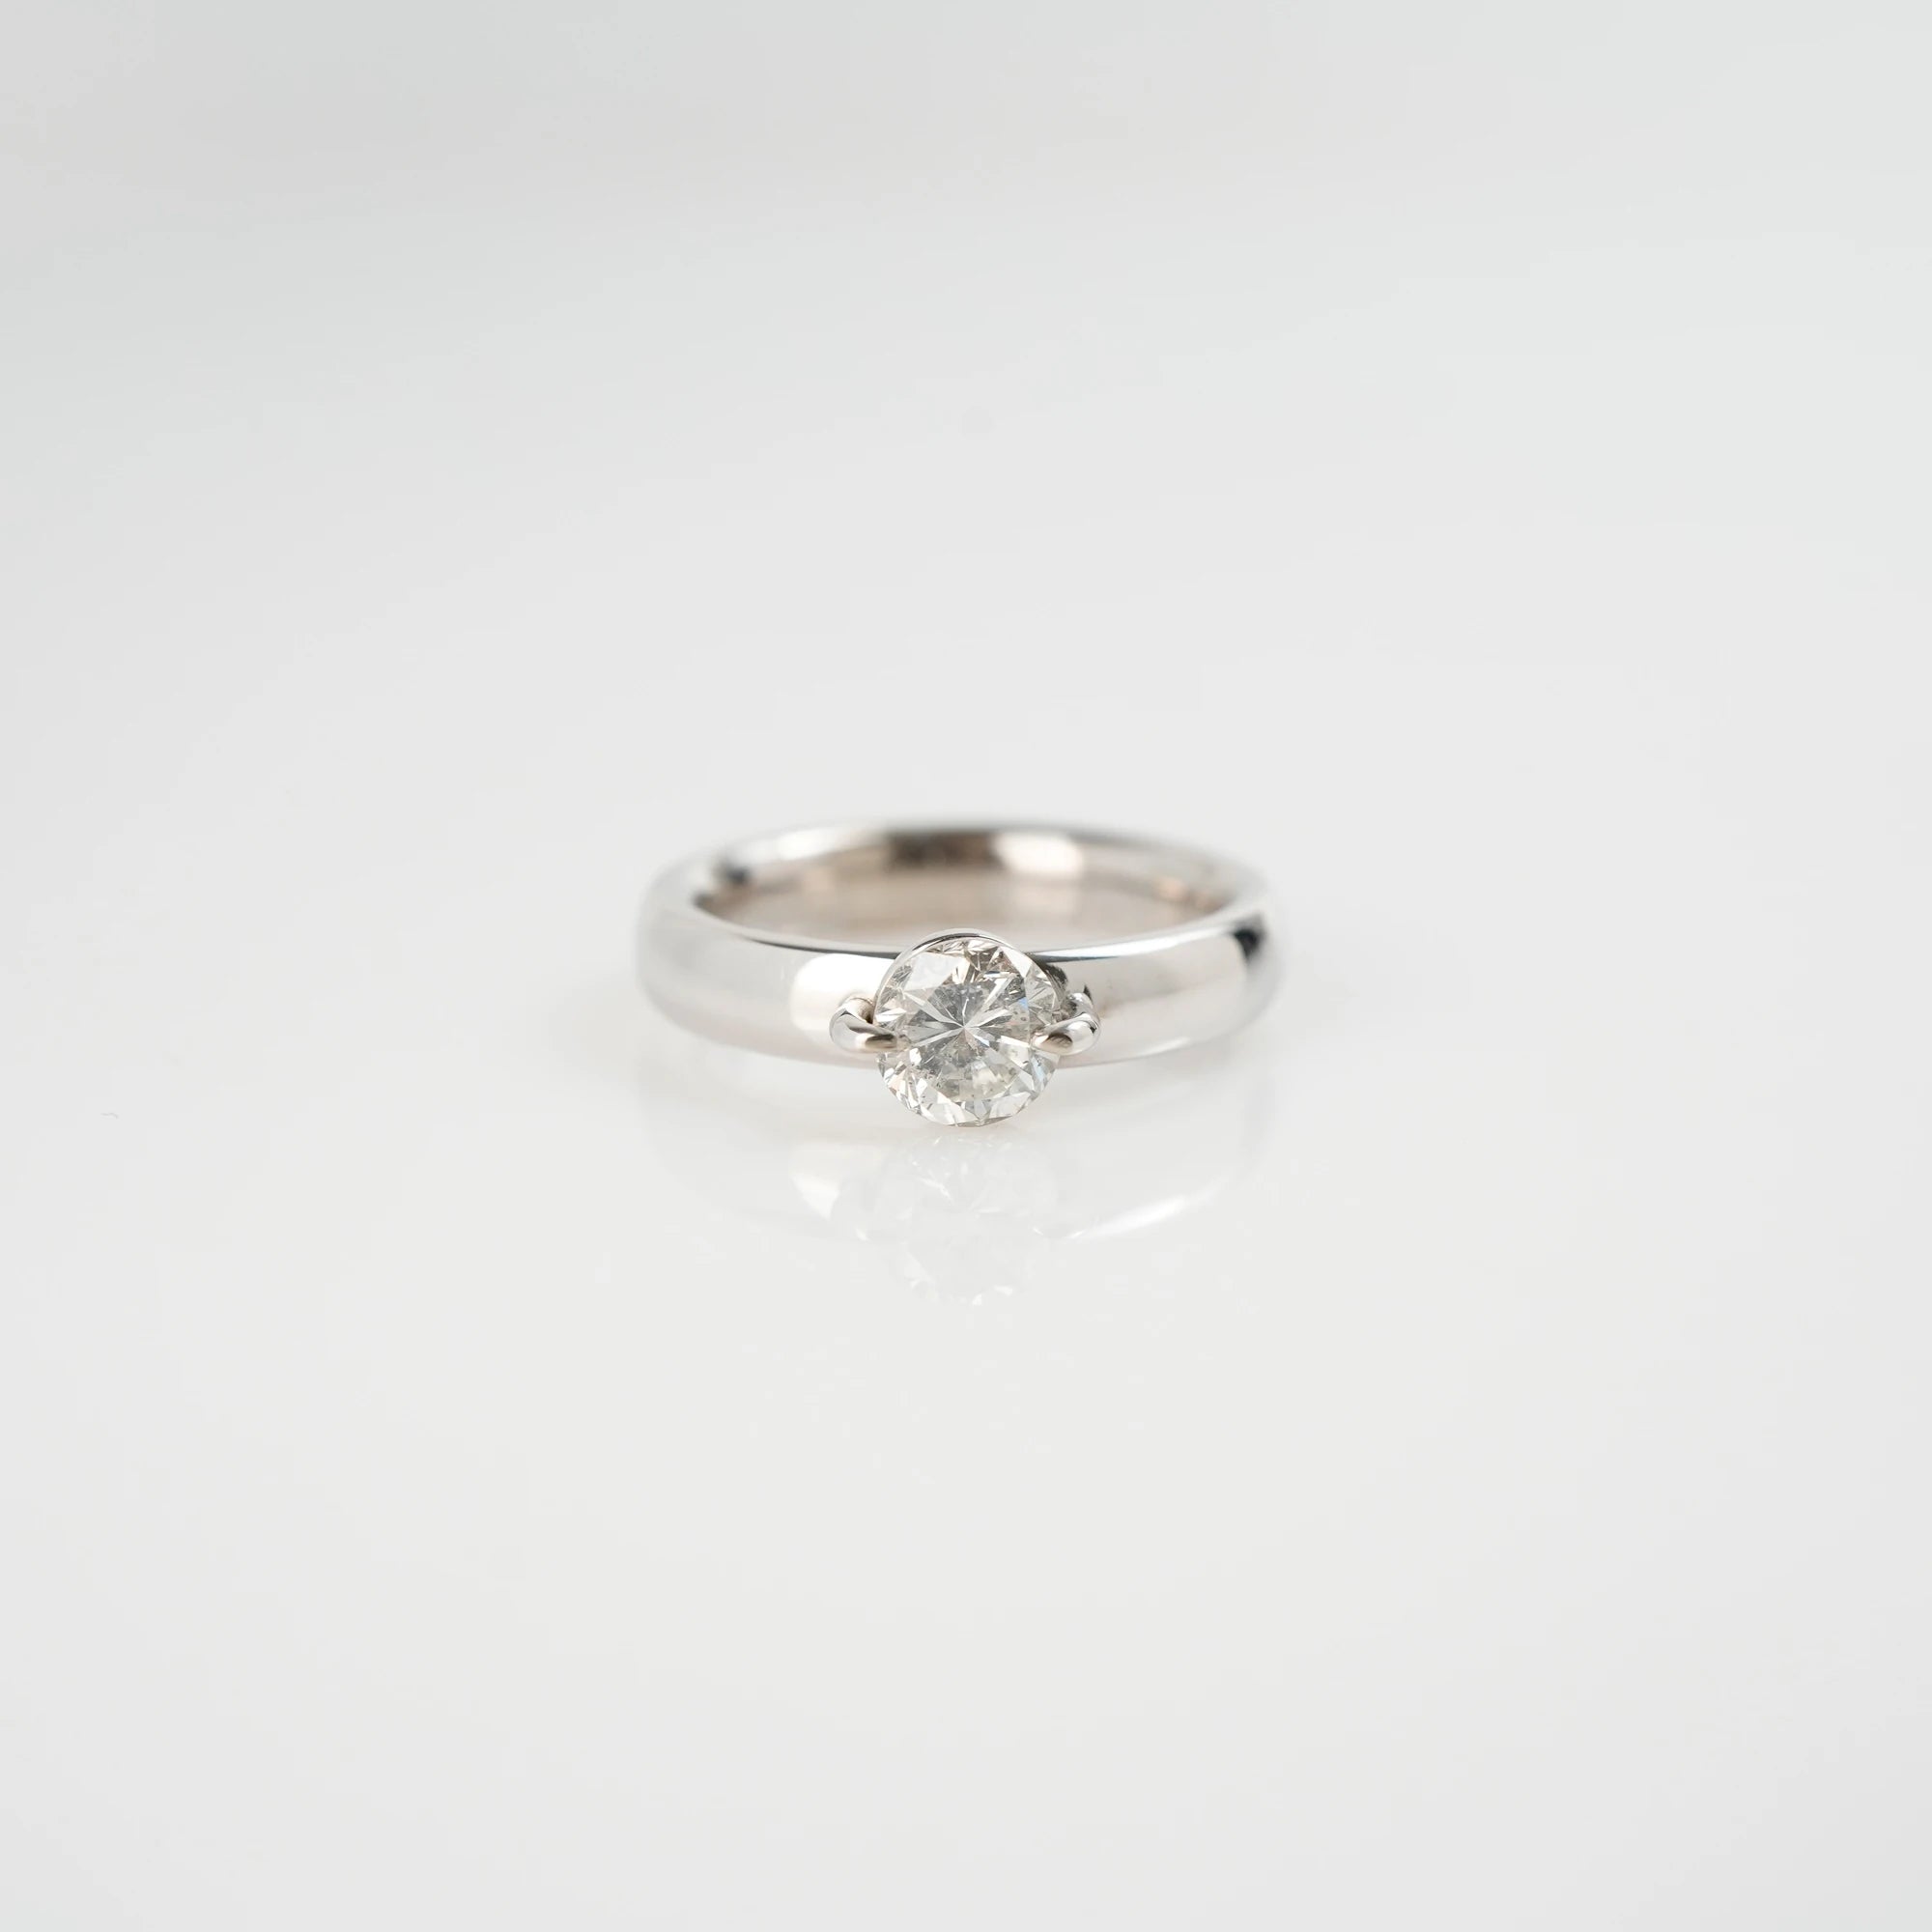 Produktfotografie des liegenden  Weißgold-Solitaire-Rings mit einem 1,10 Carat Diamanten aus der Schmuckatelier Lang Collection 